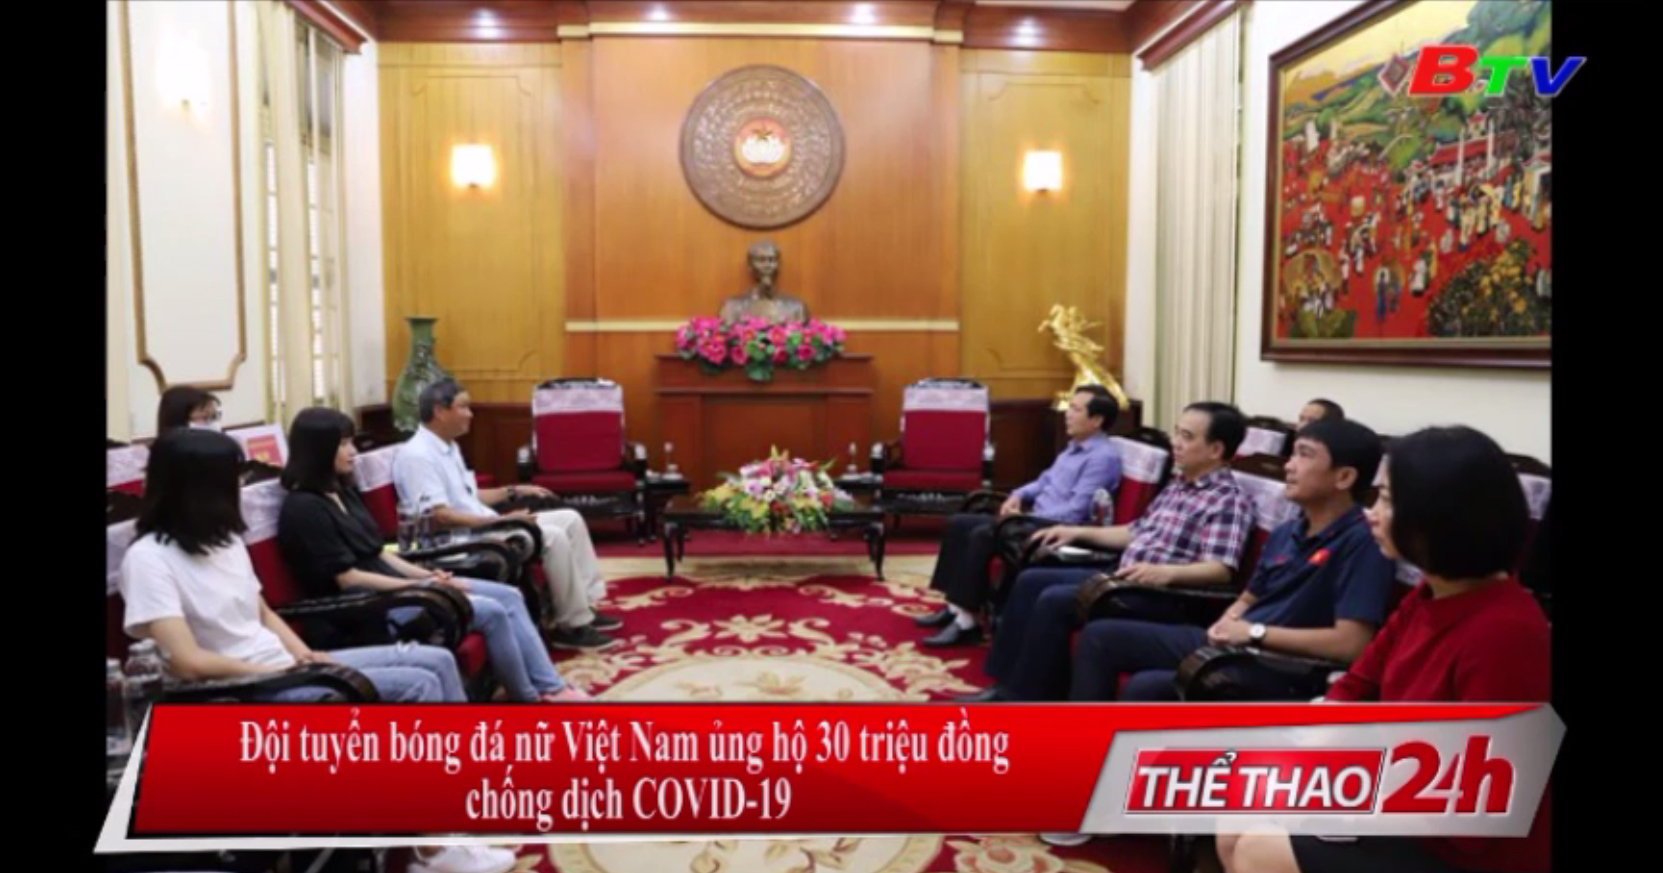 Đội tuyển Bóng đá nữ Việt Nam ủng hộ 30 triệu đồng chống dịch Covid-19